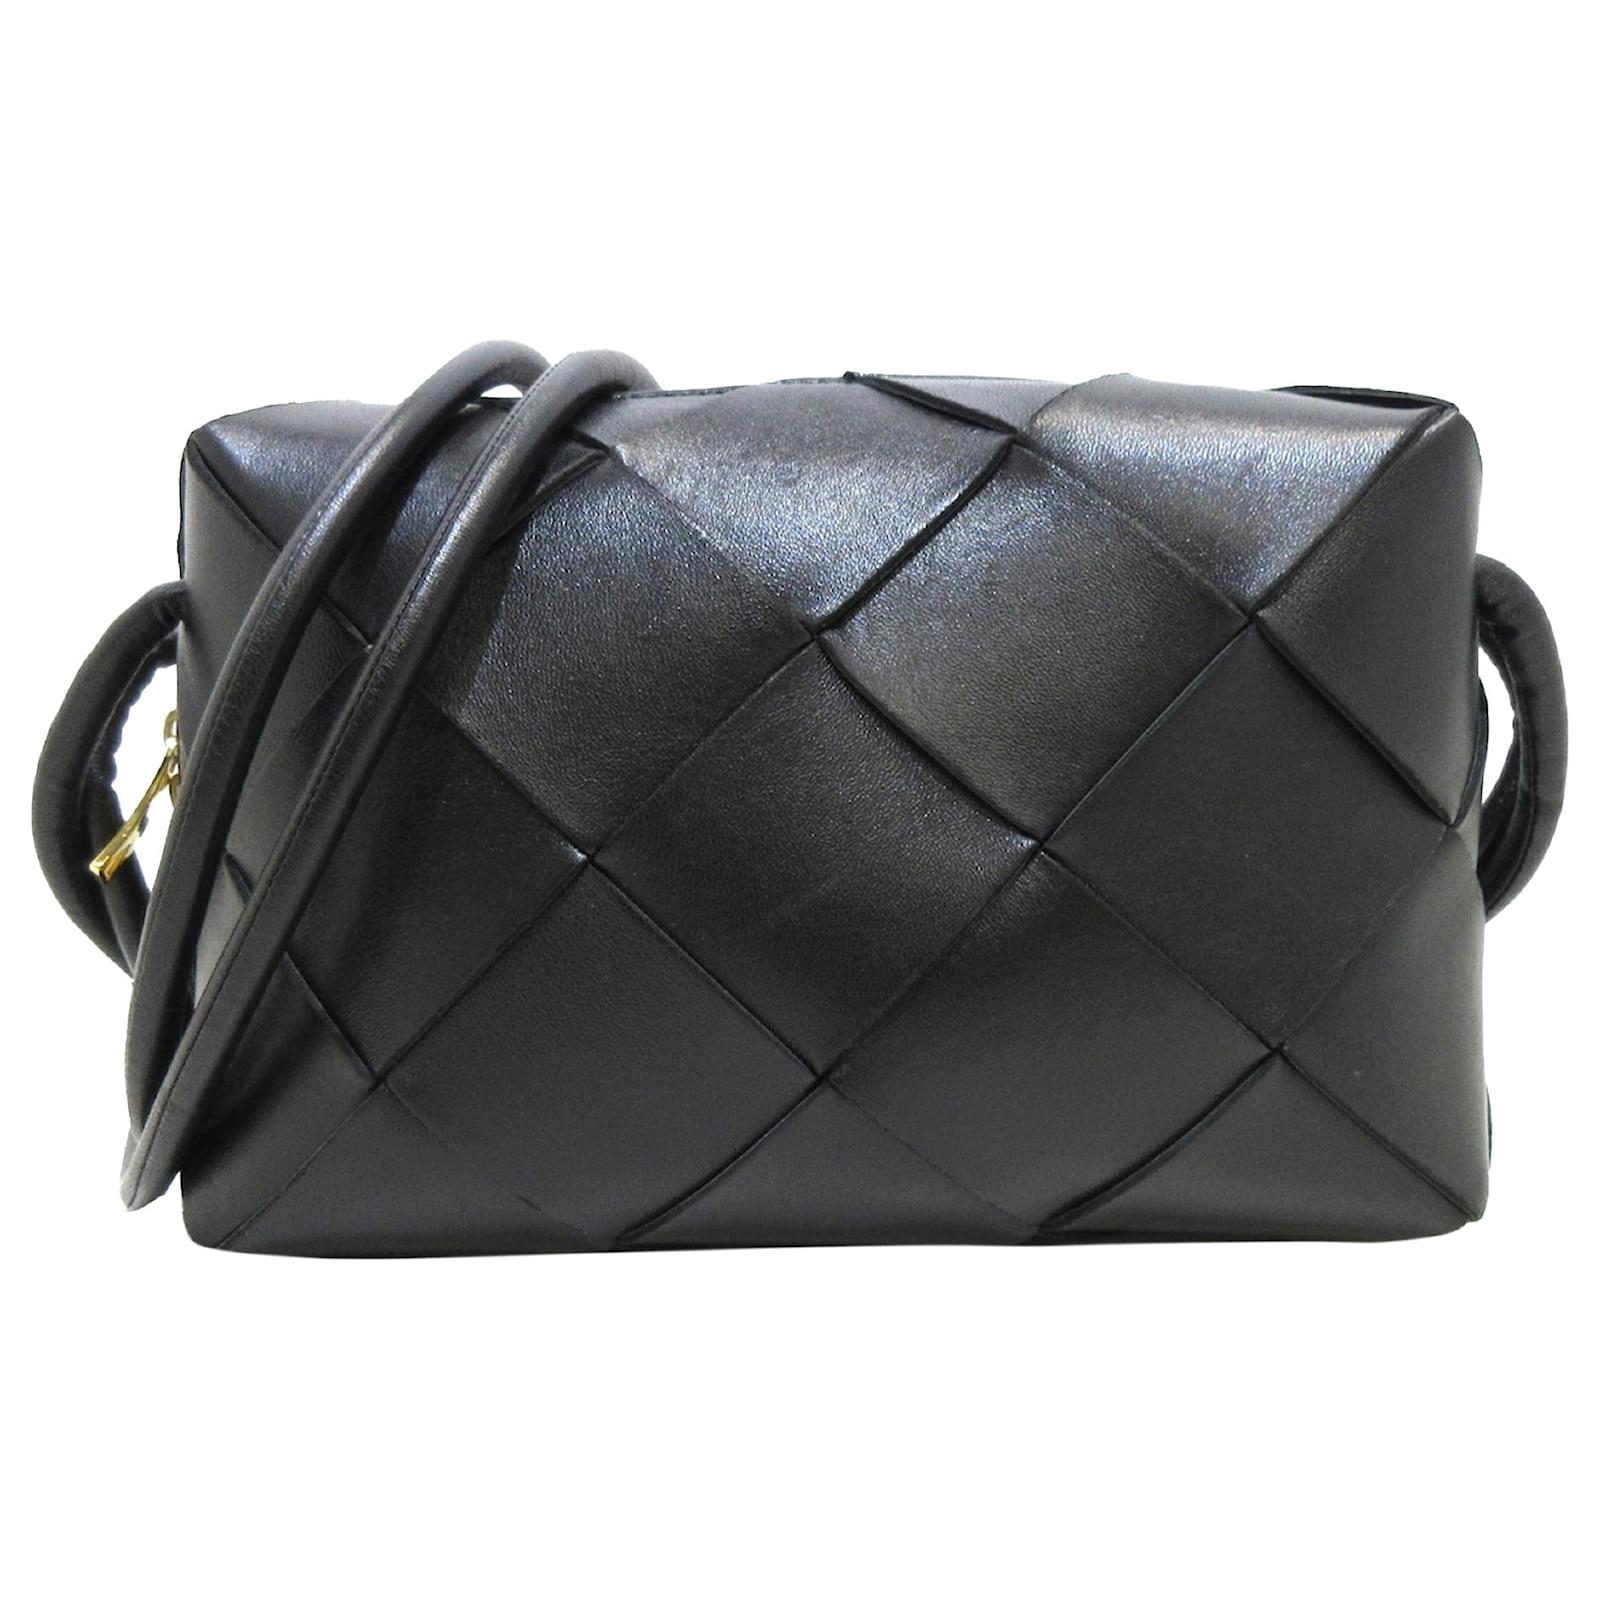 Bottega Veneta Small Intrecciato Shoulder Bag in Black